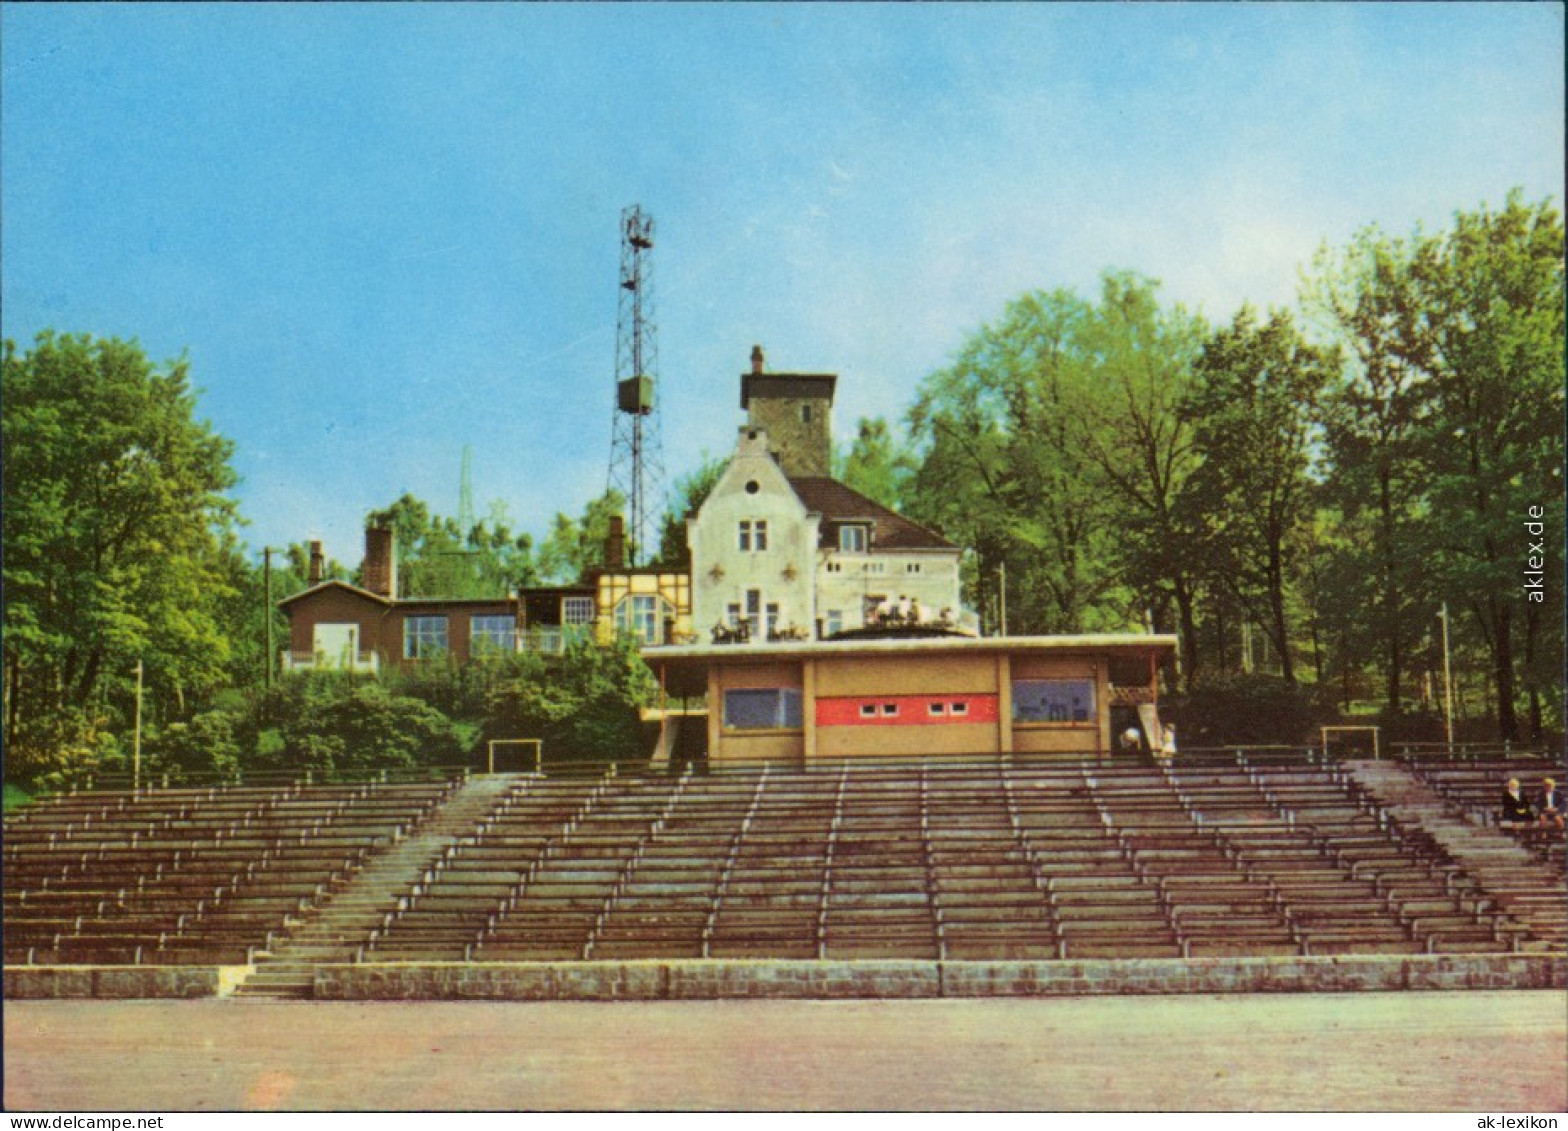 Ansichtskarte Aue (Erzgebirge) Freilichtbühne 1974 - Aue